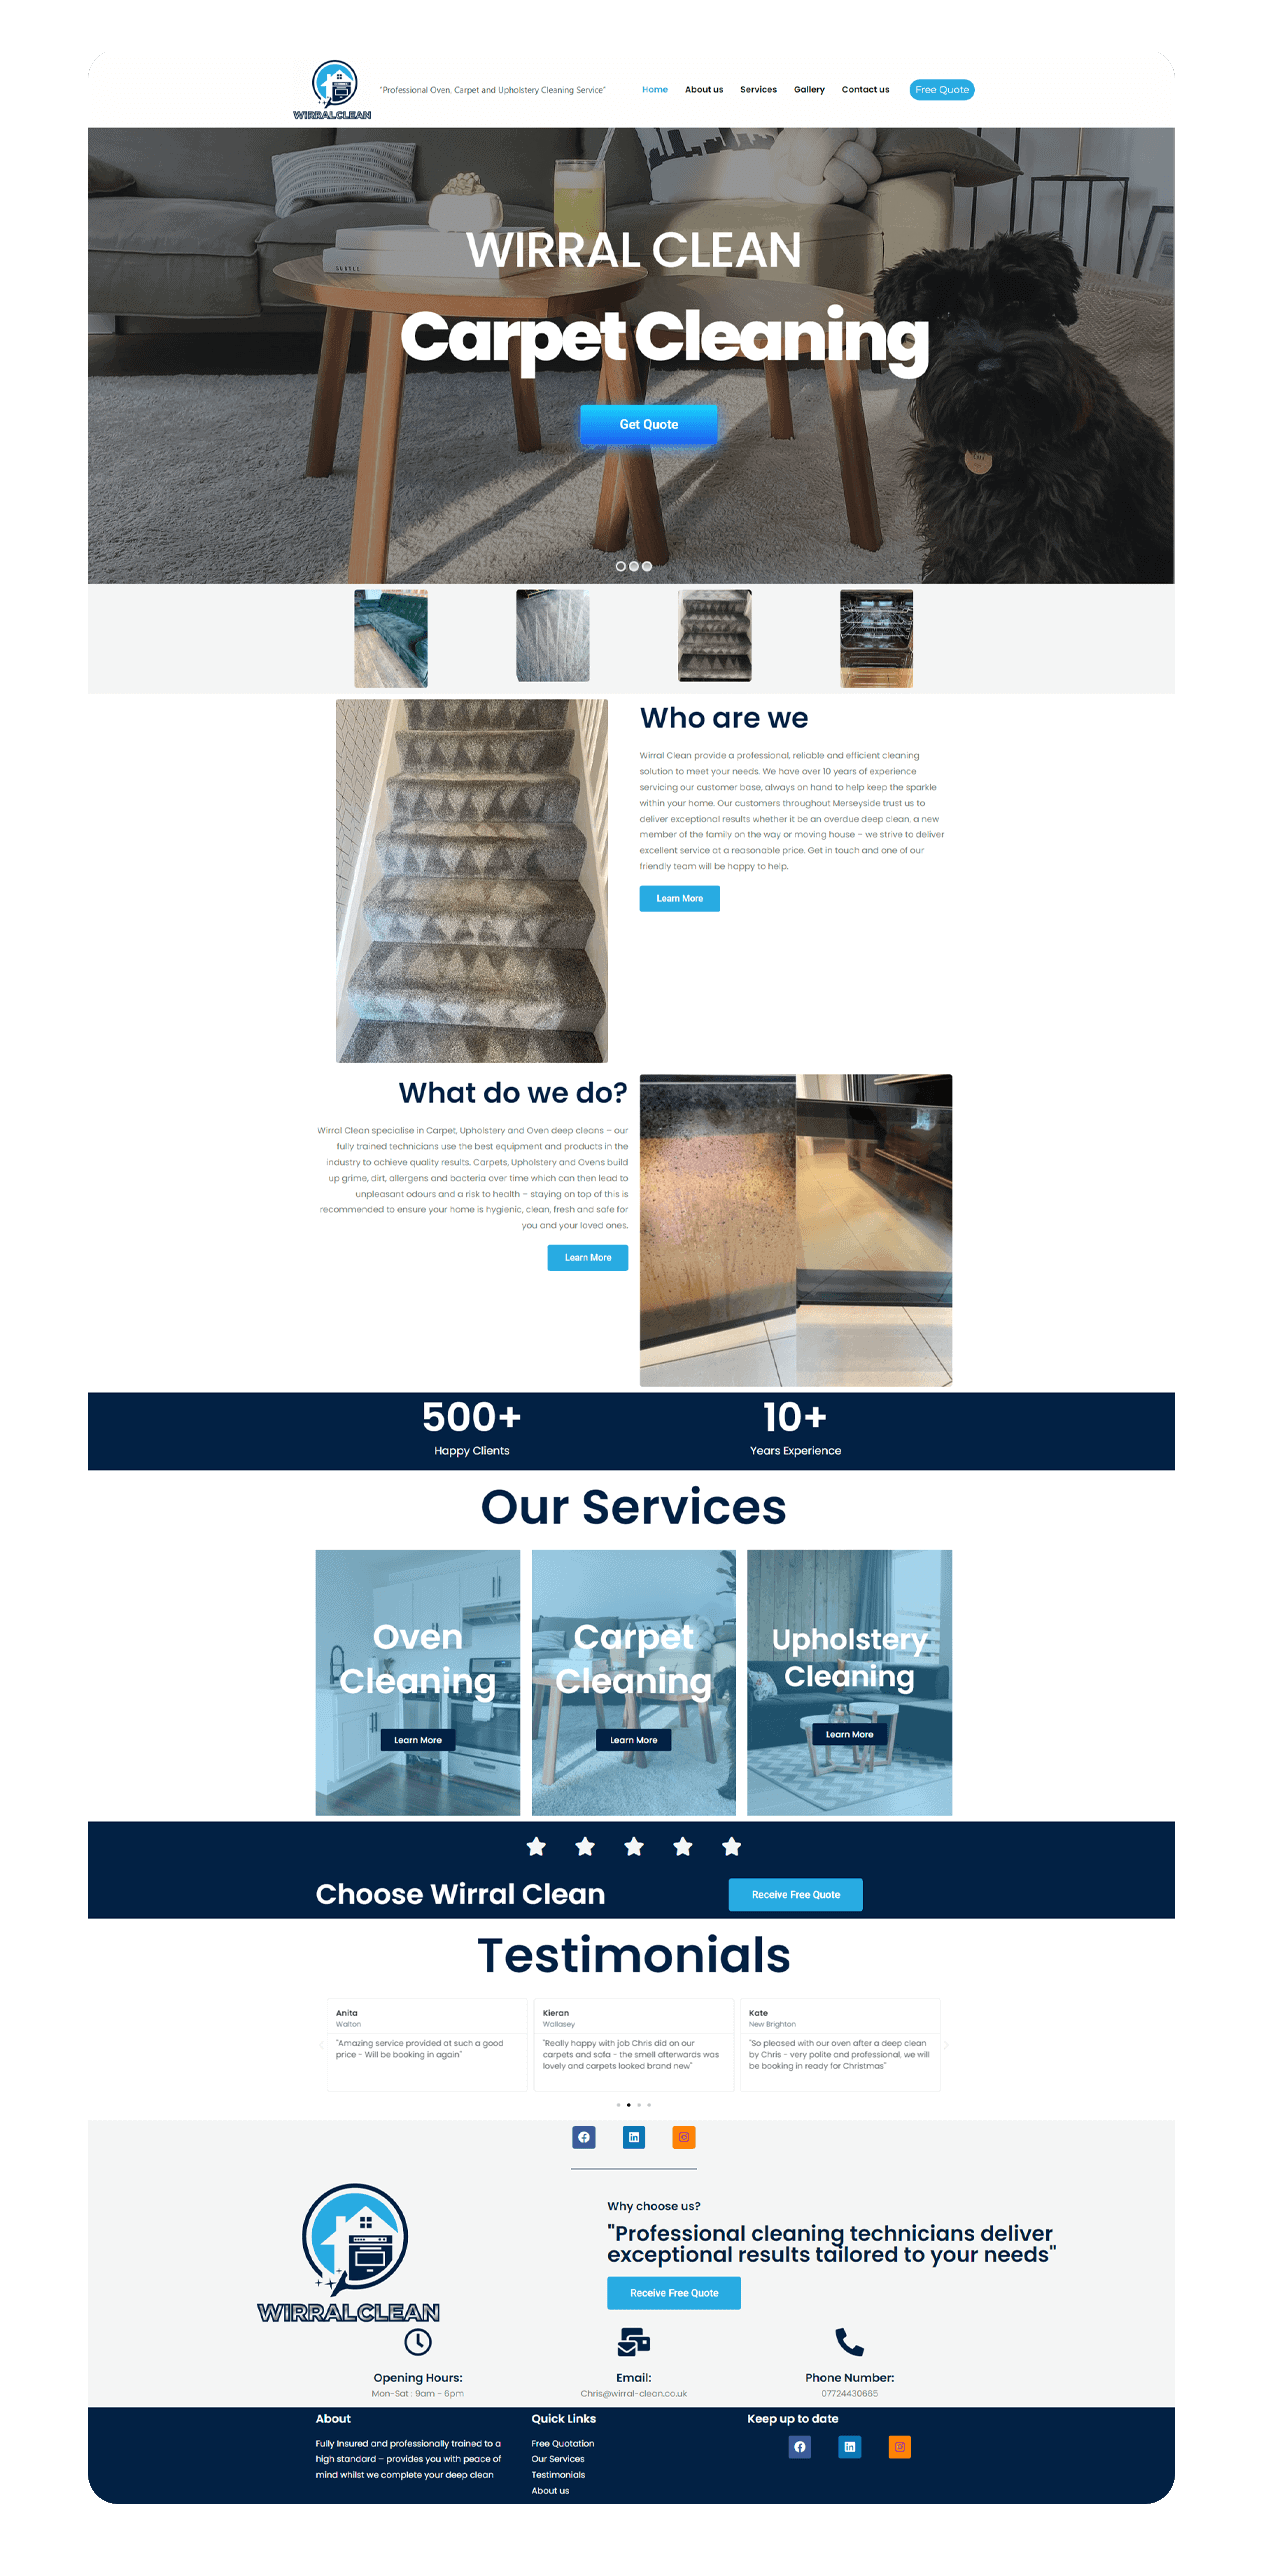 Worral Clean - Homepage